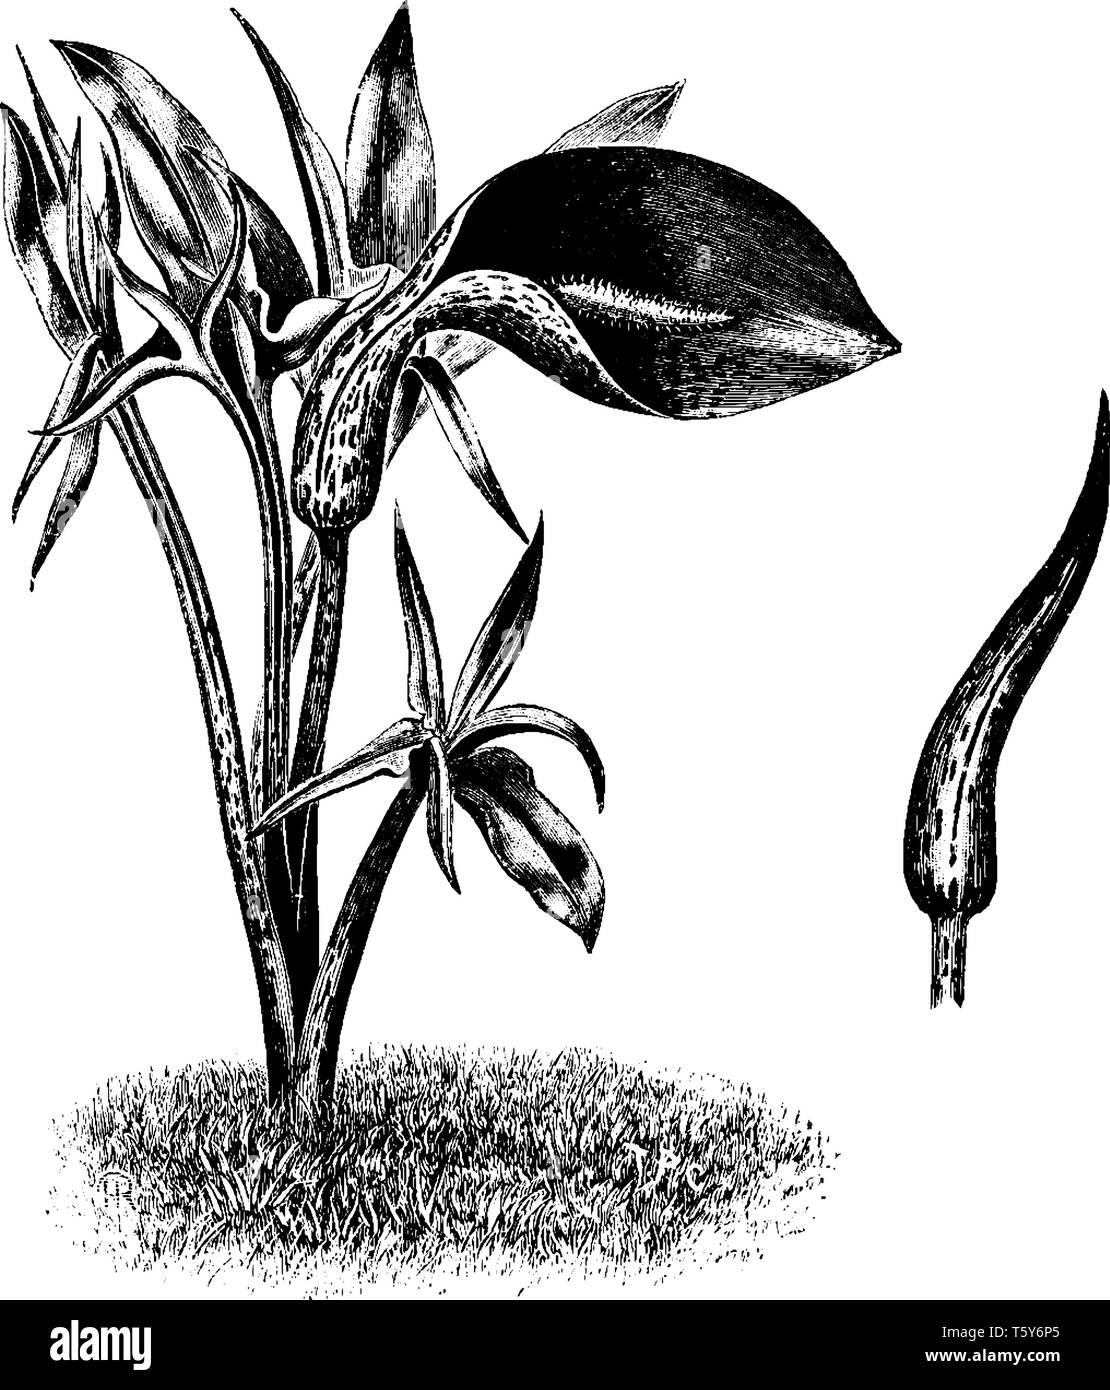 Es ist ein dunkles und lila Farbe braun. Es ist eine Zierpflanze native auf dem nordwestlichen Mittelmeerraum, vintage Strichzeichnung oder Gravur illus Stock Vektor